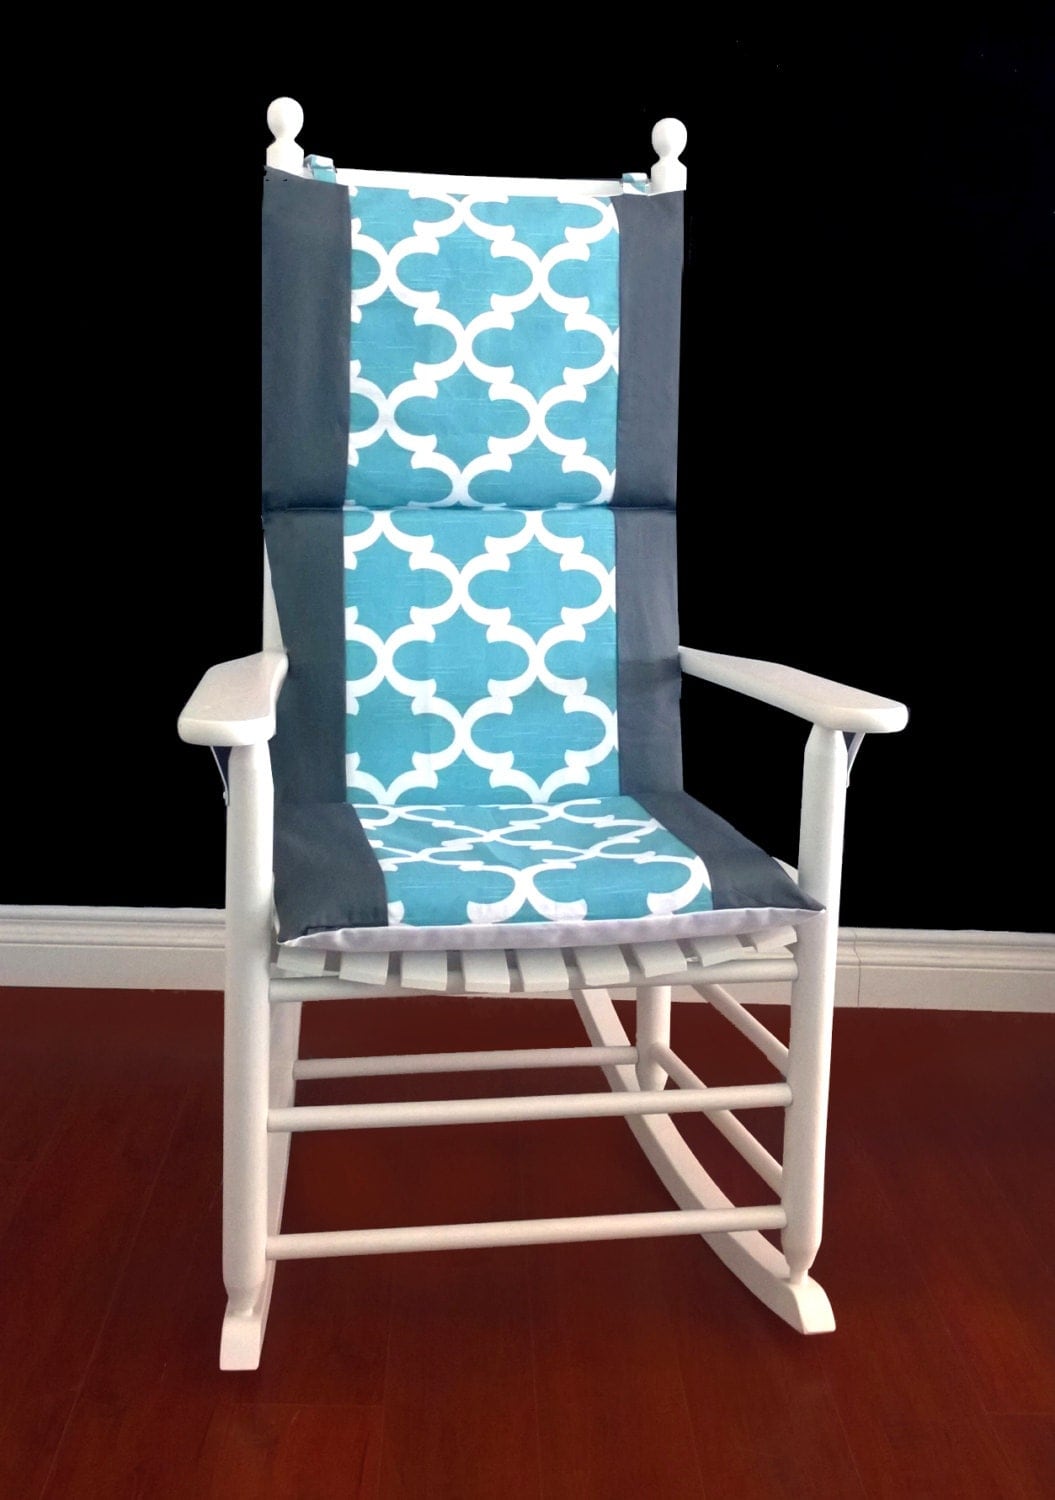 ON SALE Rocking Chair Cushion Cover Fynn Spirit Blue Grey